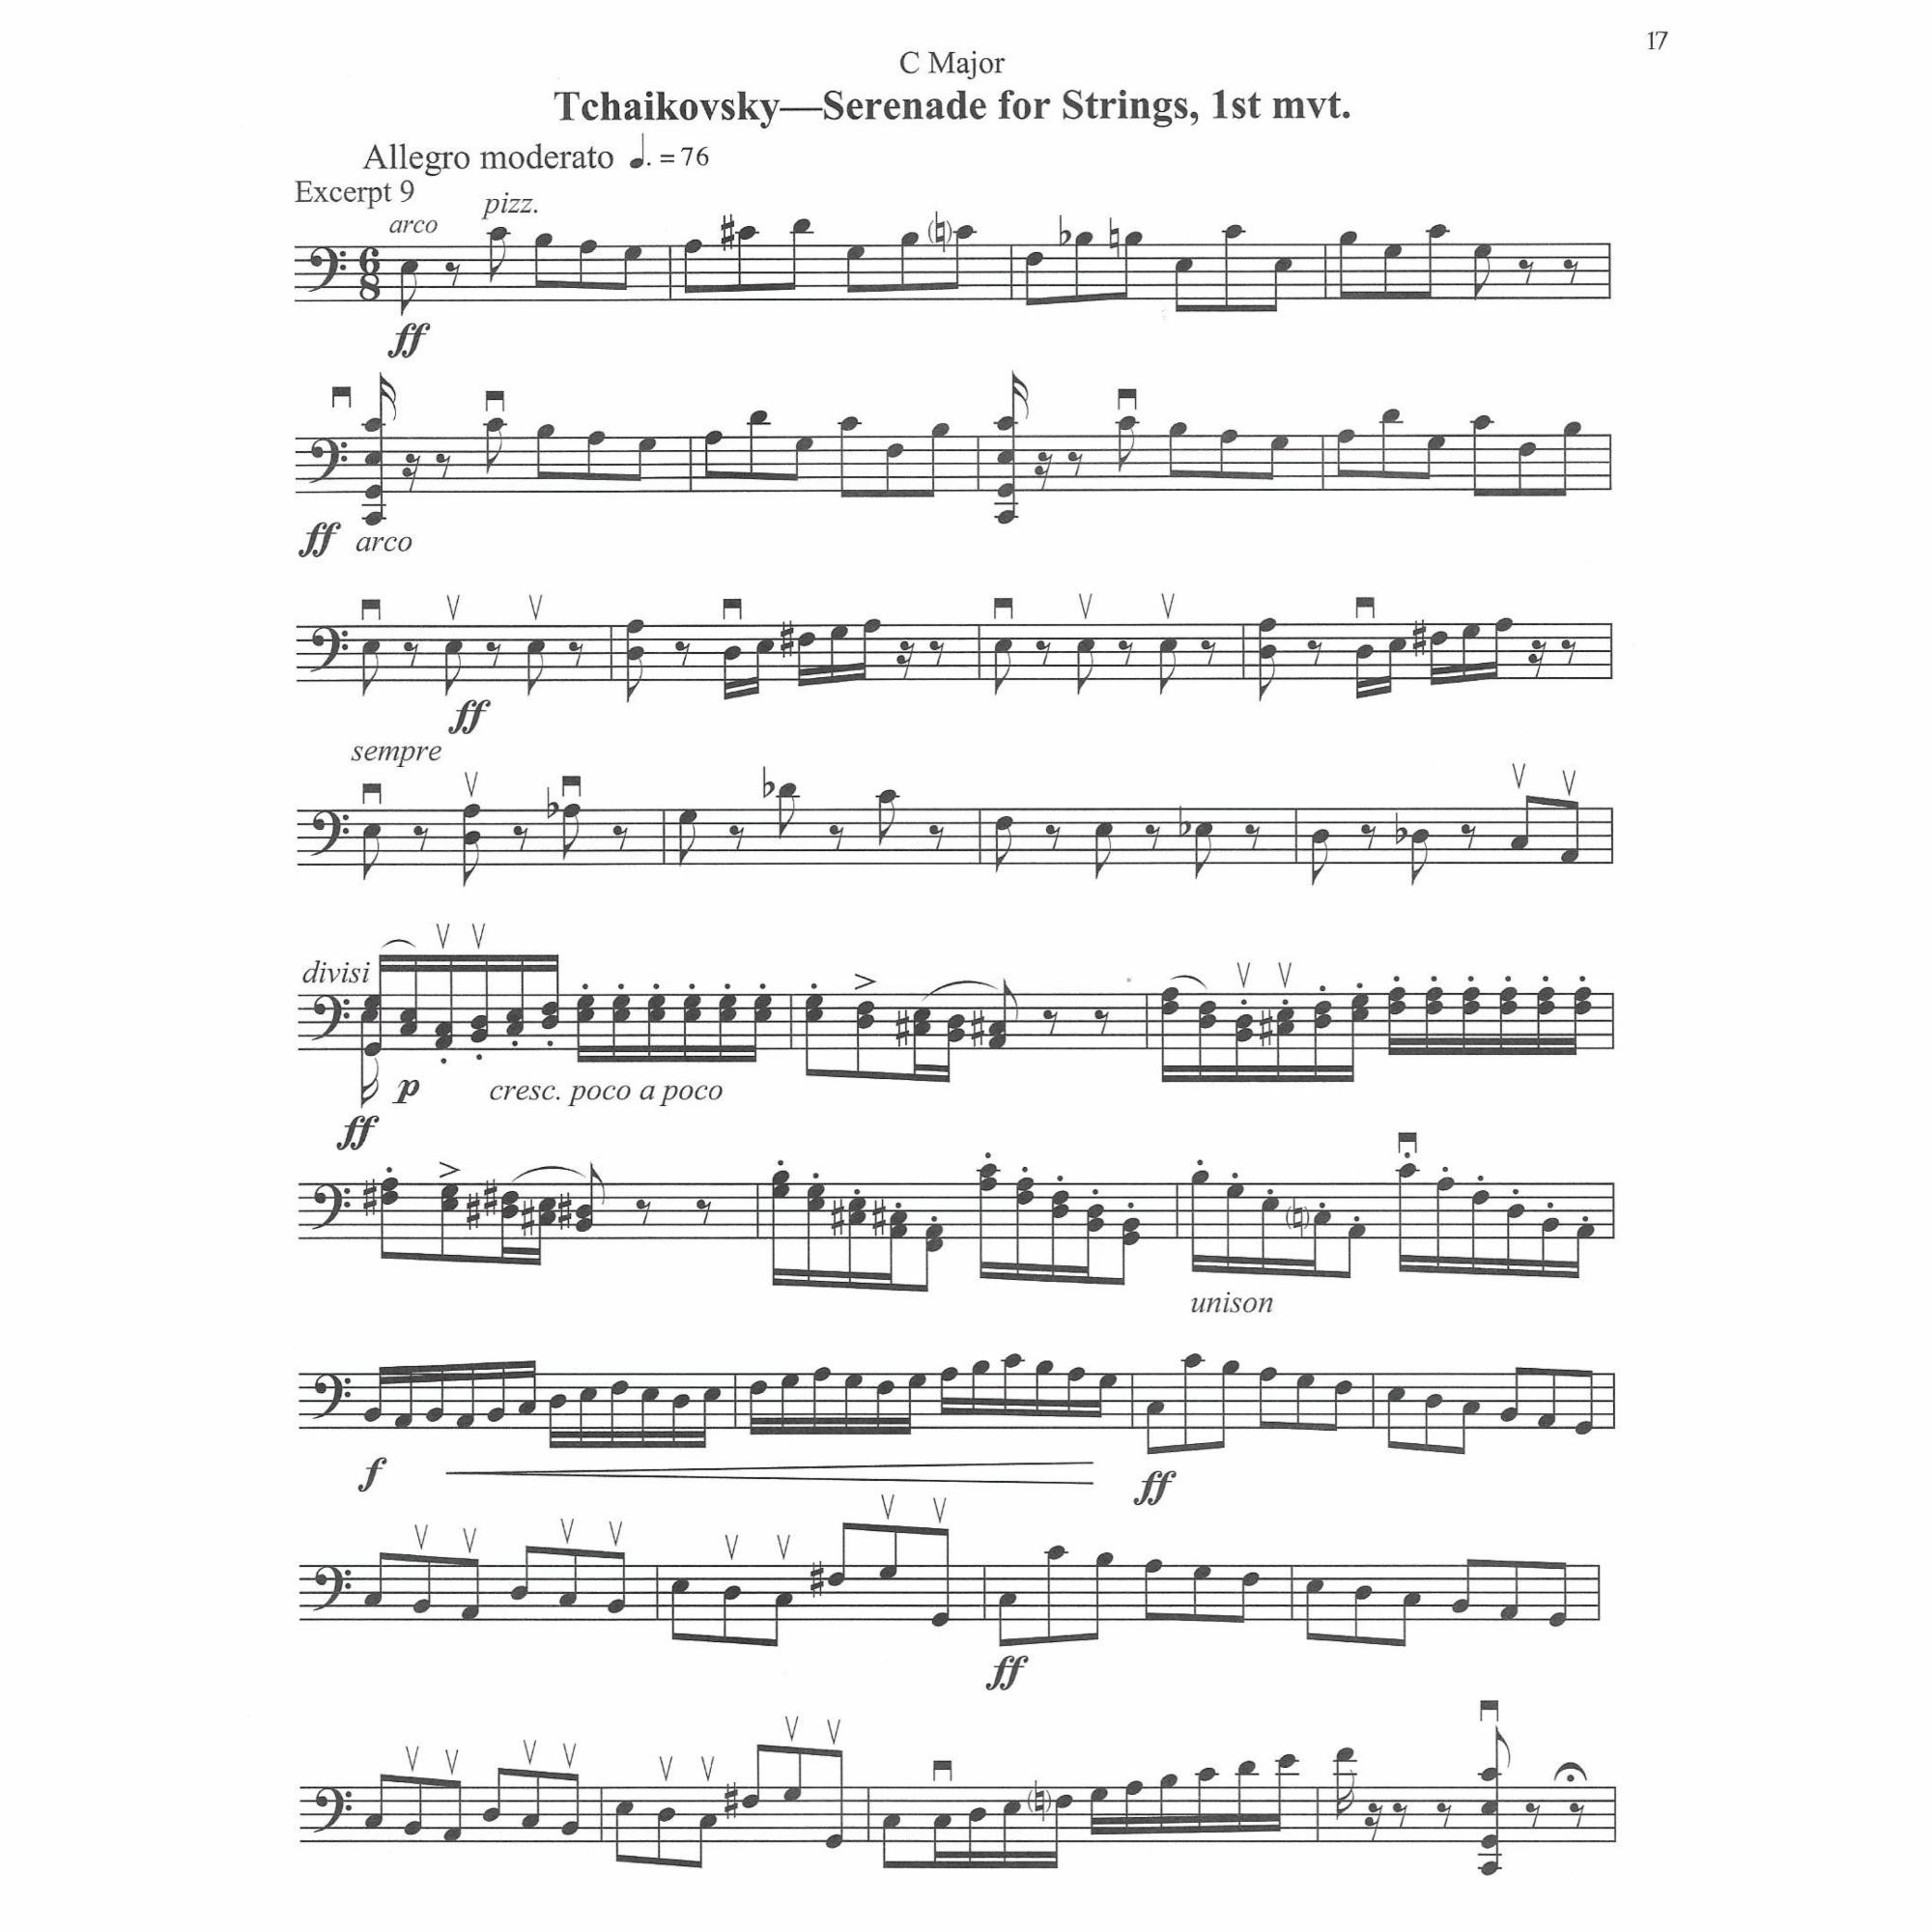 Sample: Cello (Pg. 17)